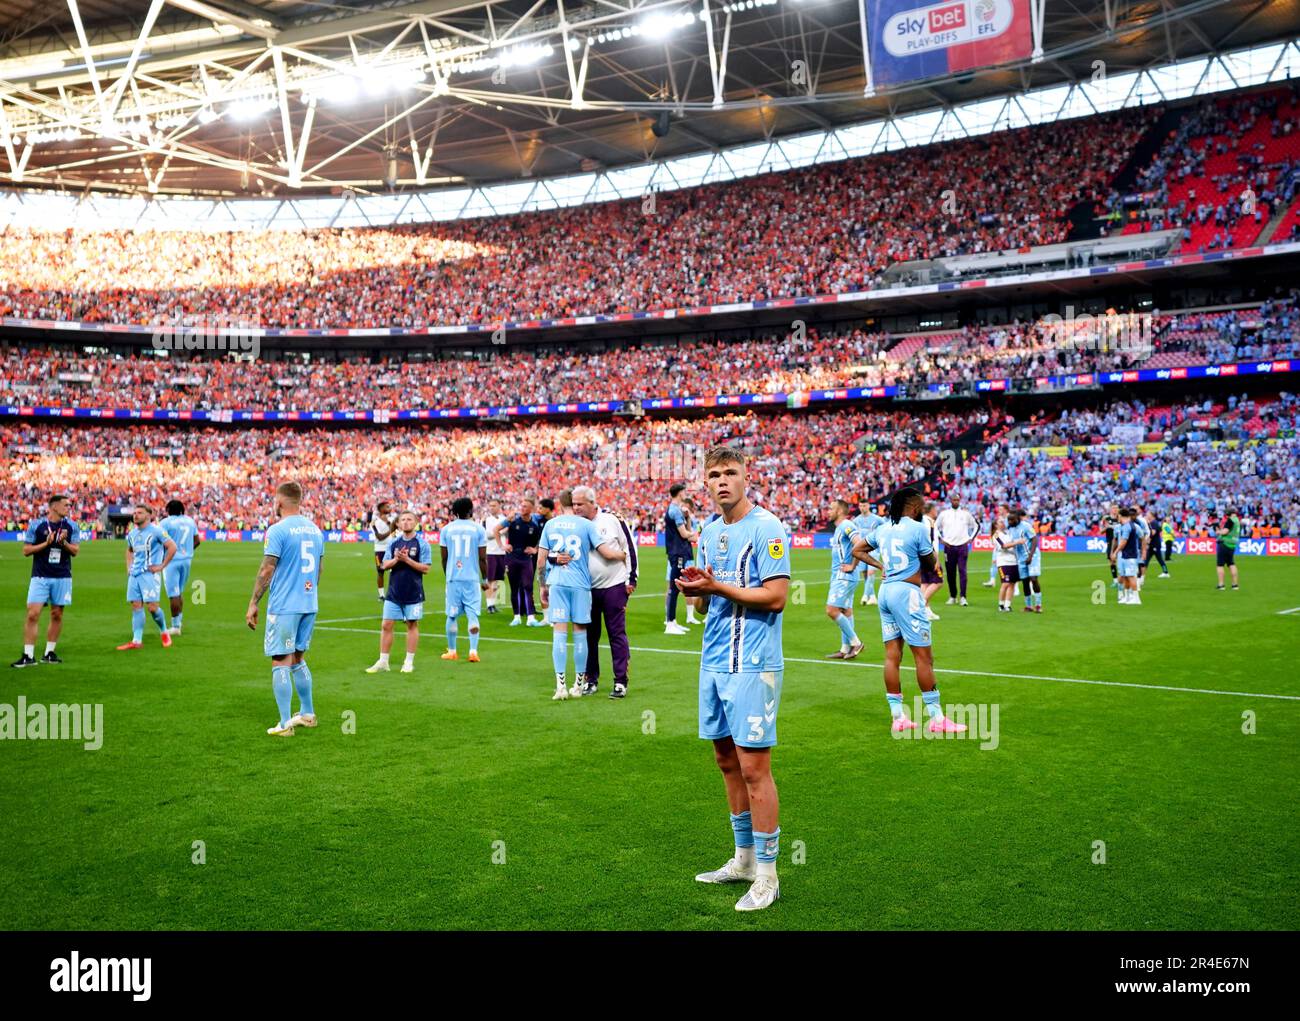 Callum Doyle, de Coventry City, aplaude a los aficionados al final del play-off del Sky Bet Championship en el Wembley Stadium, Londres. Fecha de la fotografía: Sábado 27 de mayo de 2023. Foto de stock